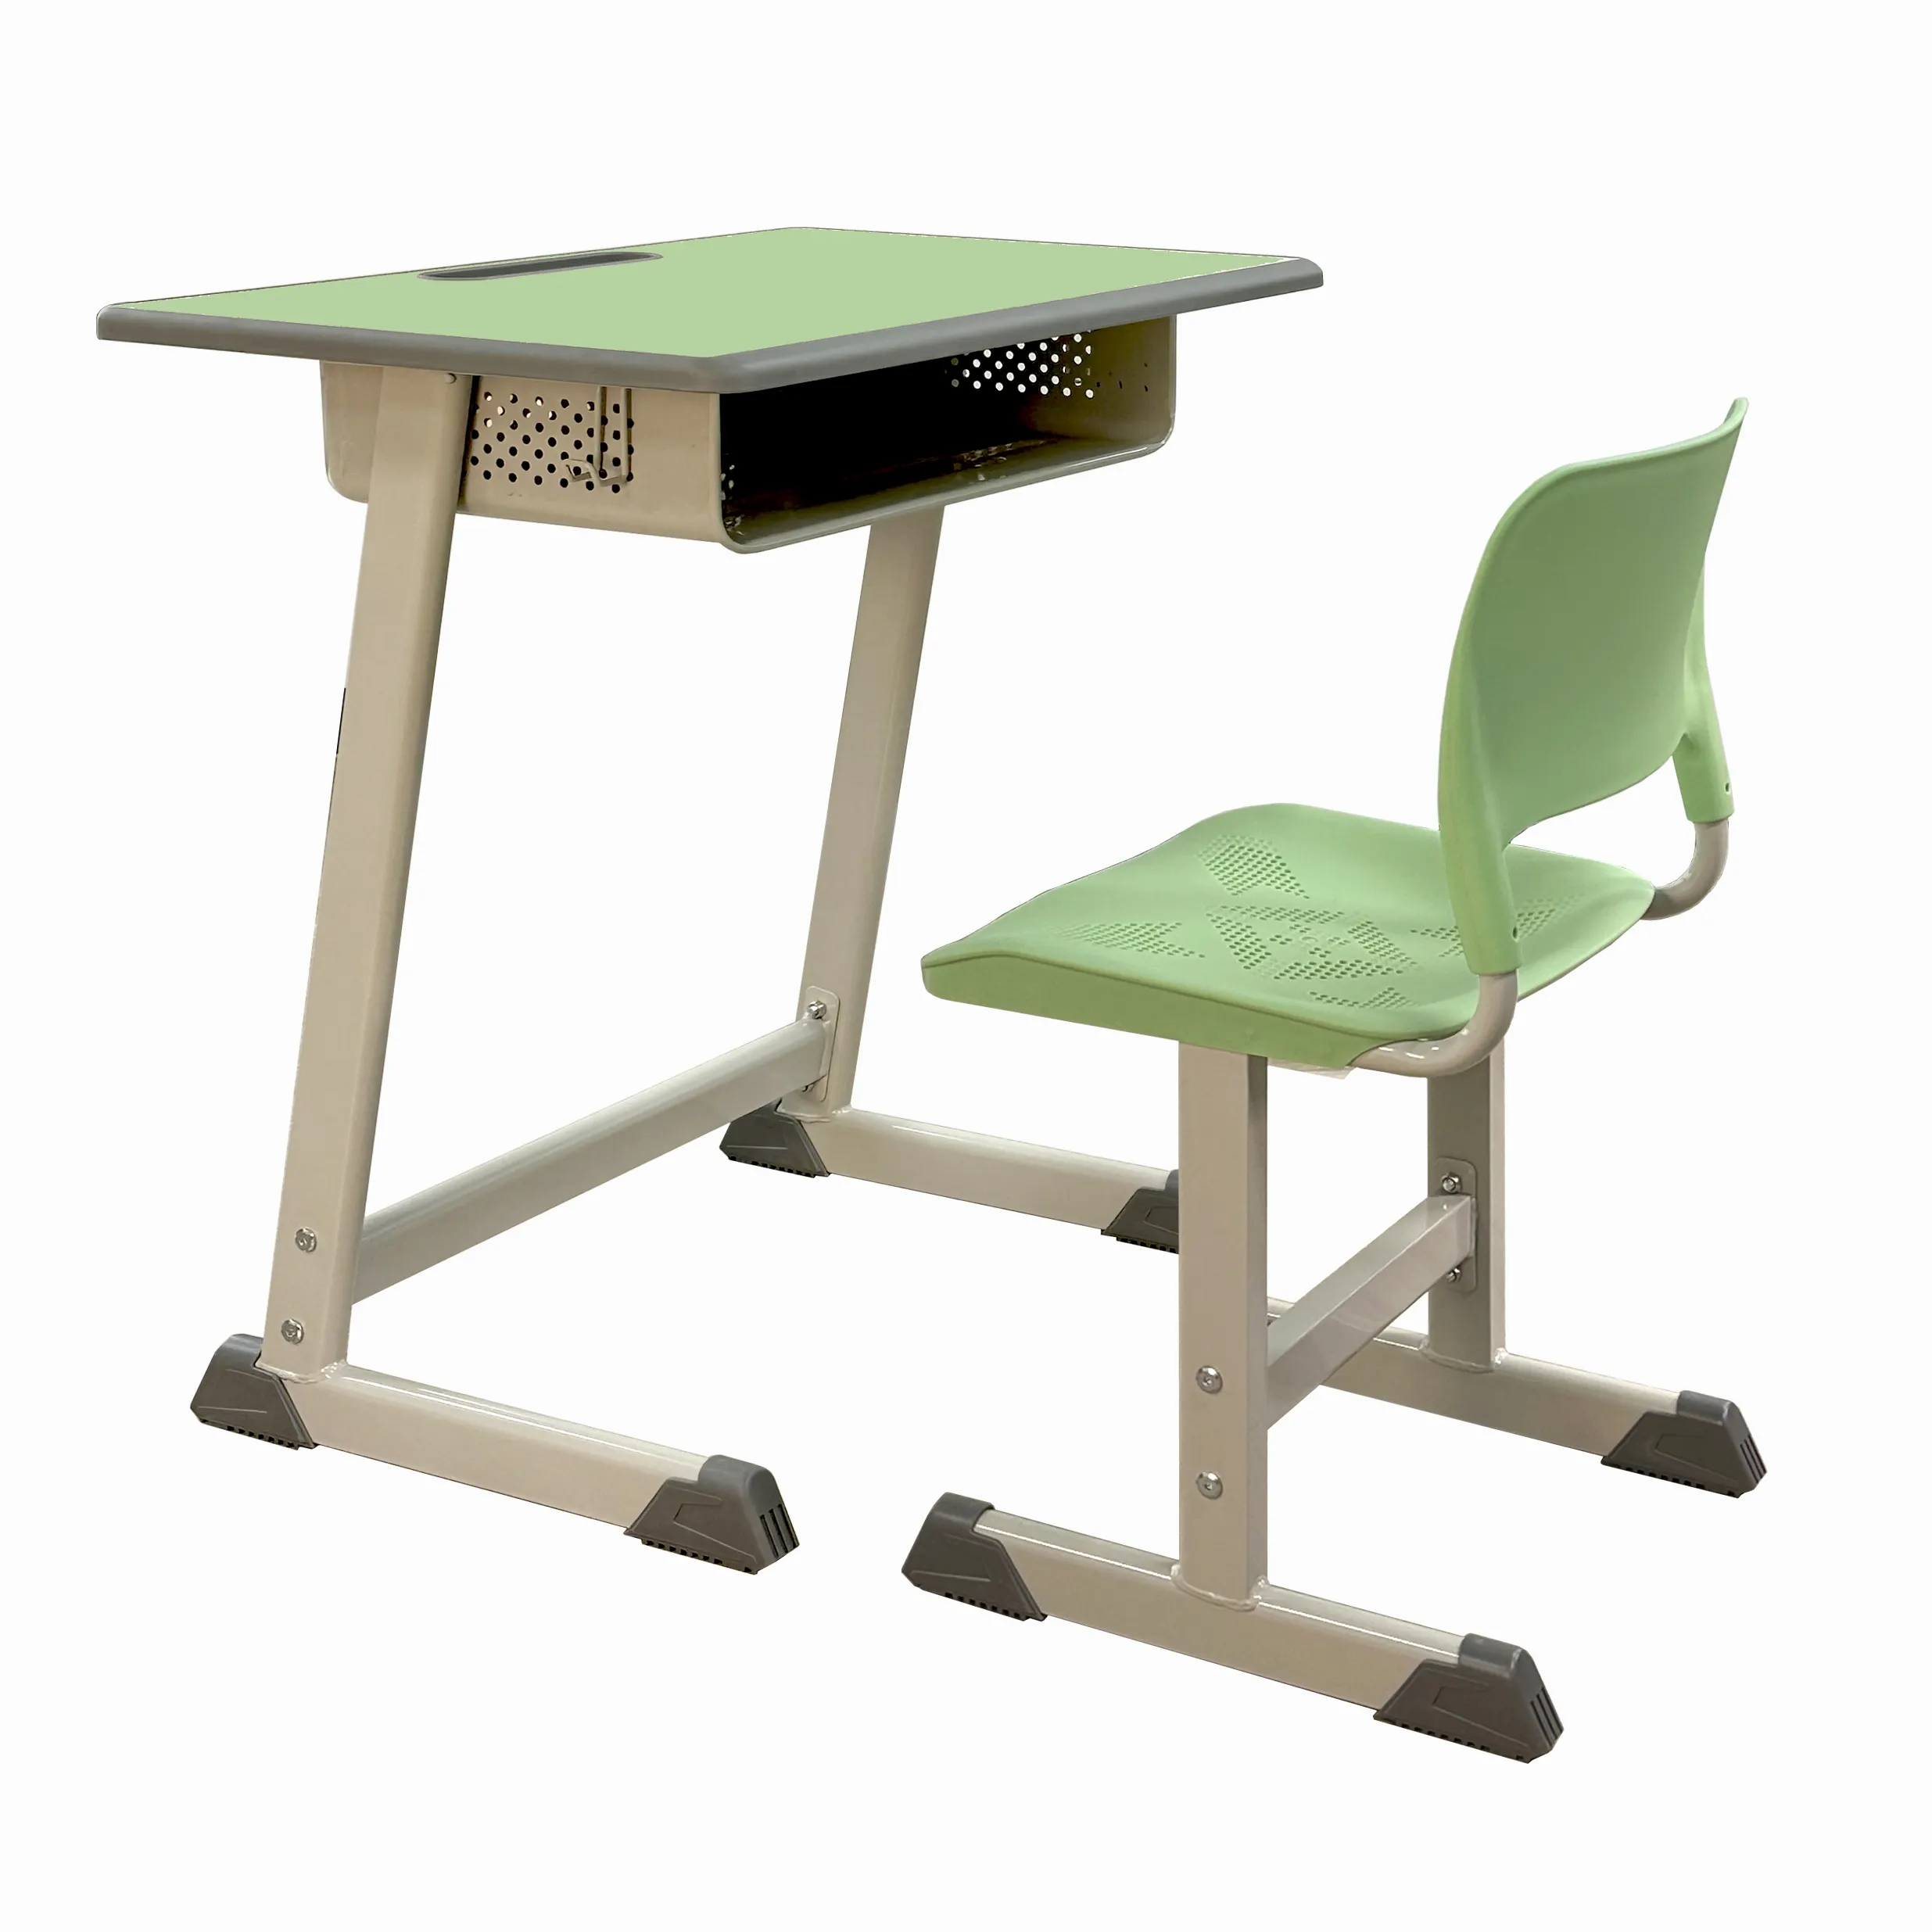 Presa di fabbrica in metallo e sedile in legno per gli studenti delle scuole preferito in Europa e America per l'apprendimento